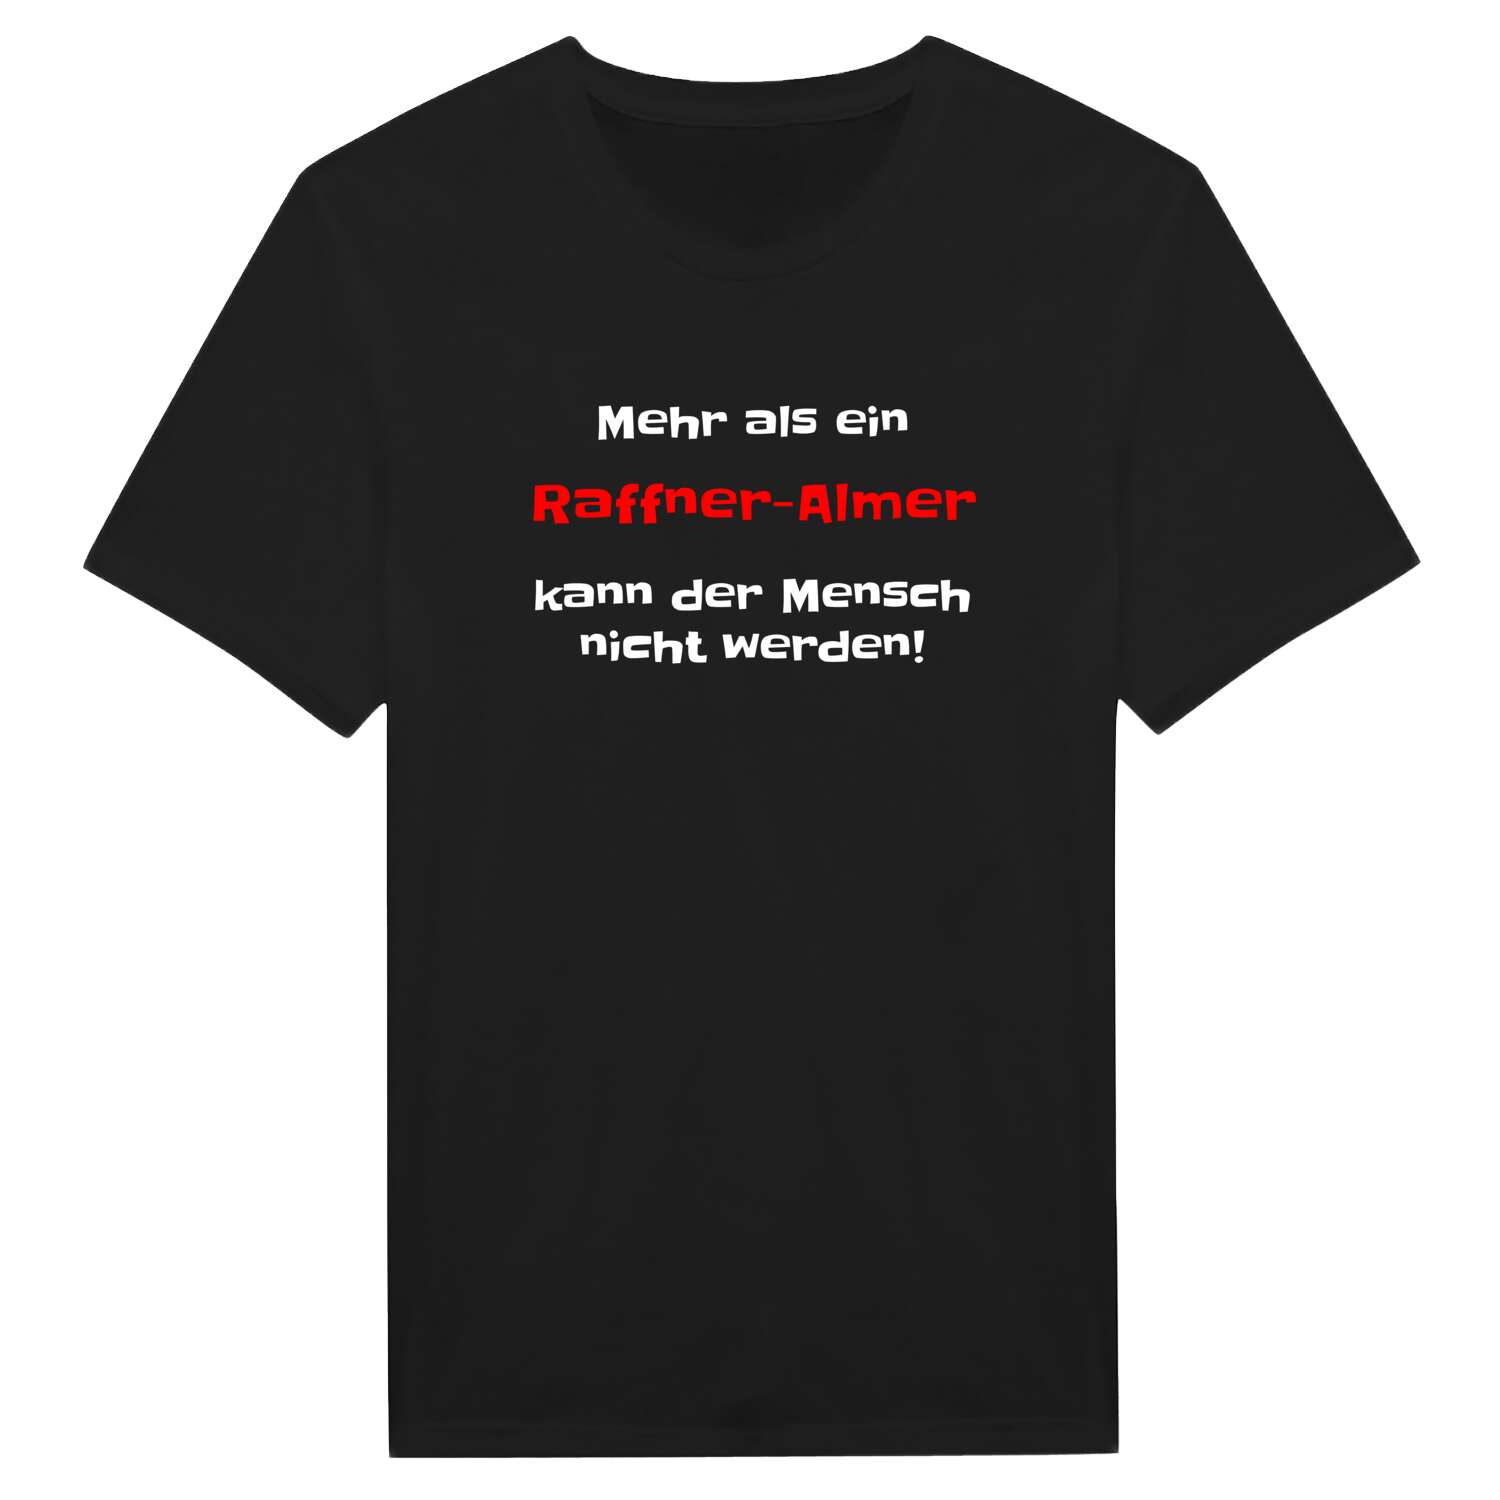 Raffner-Alm T-Shirt »Mehr als ein«